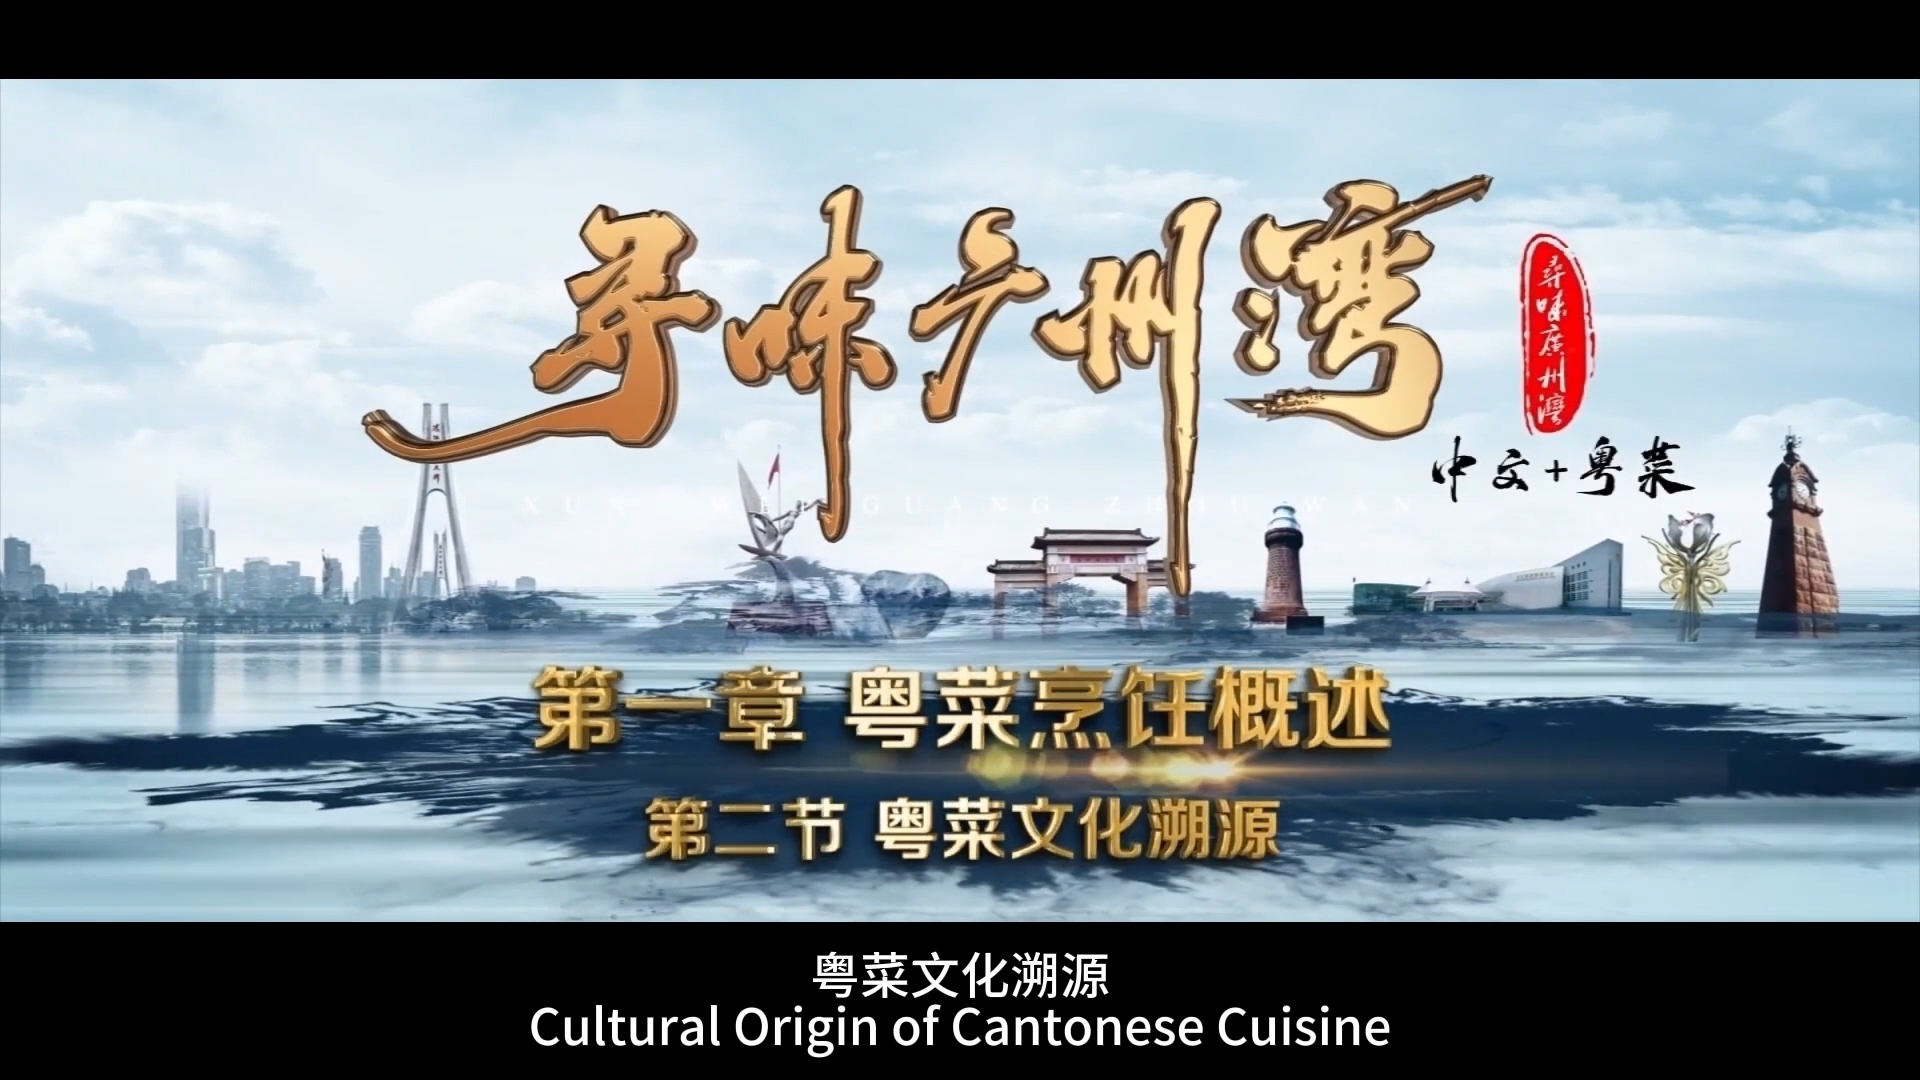 Cultural Origin of Cantonese Cuisine